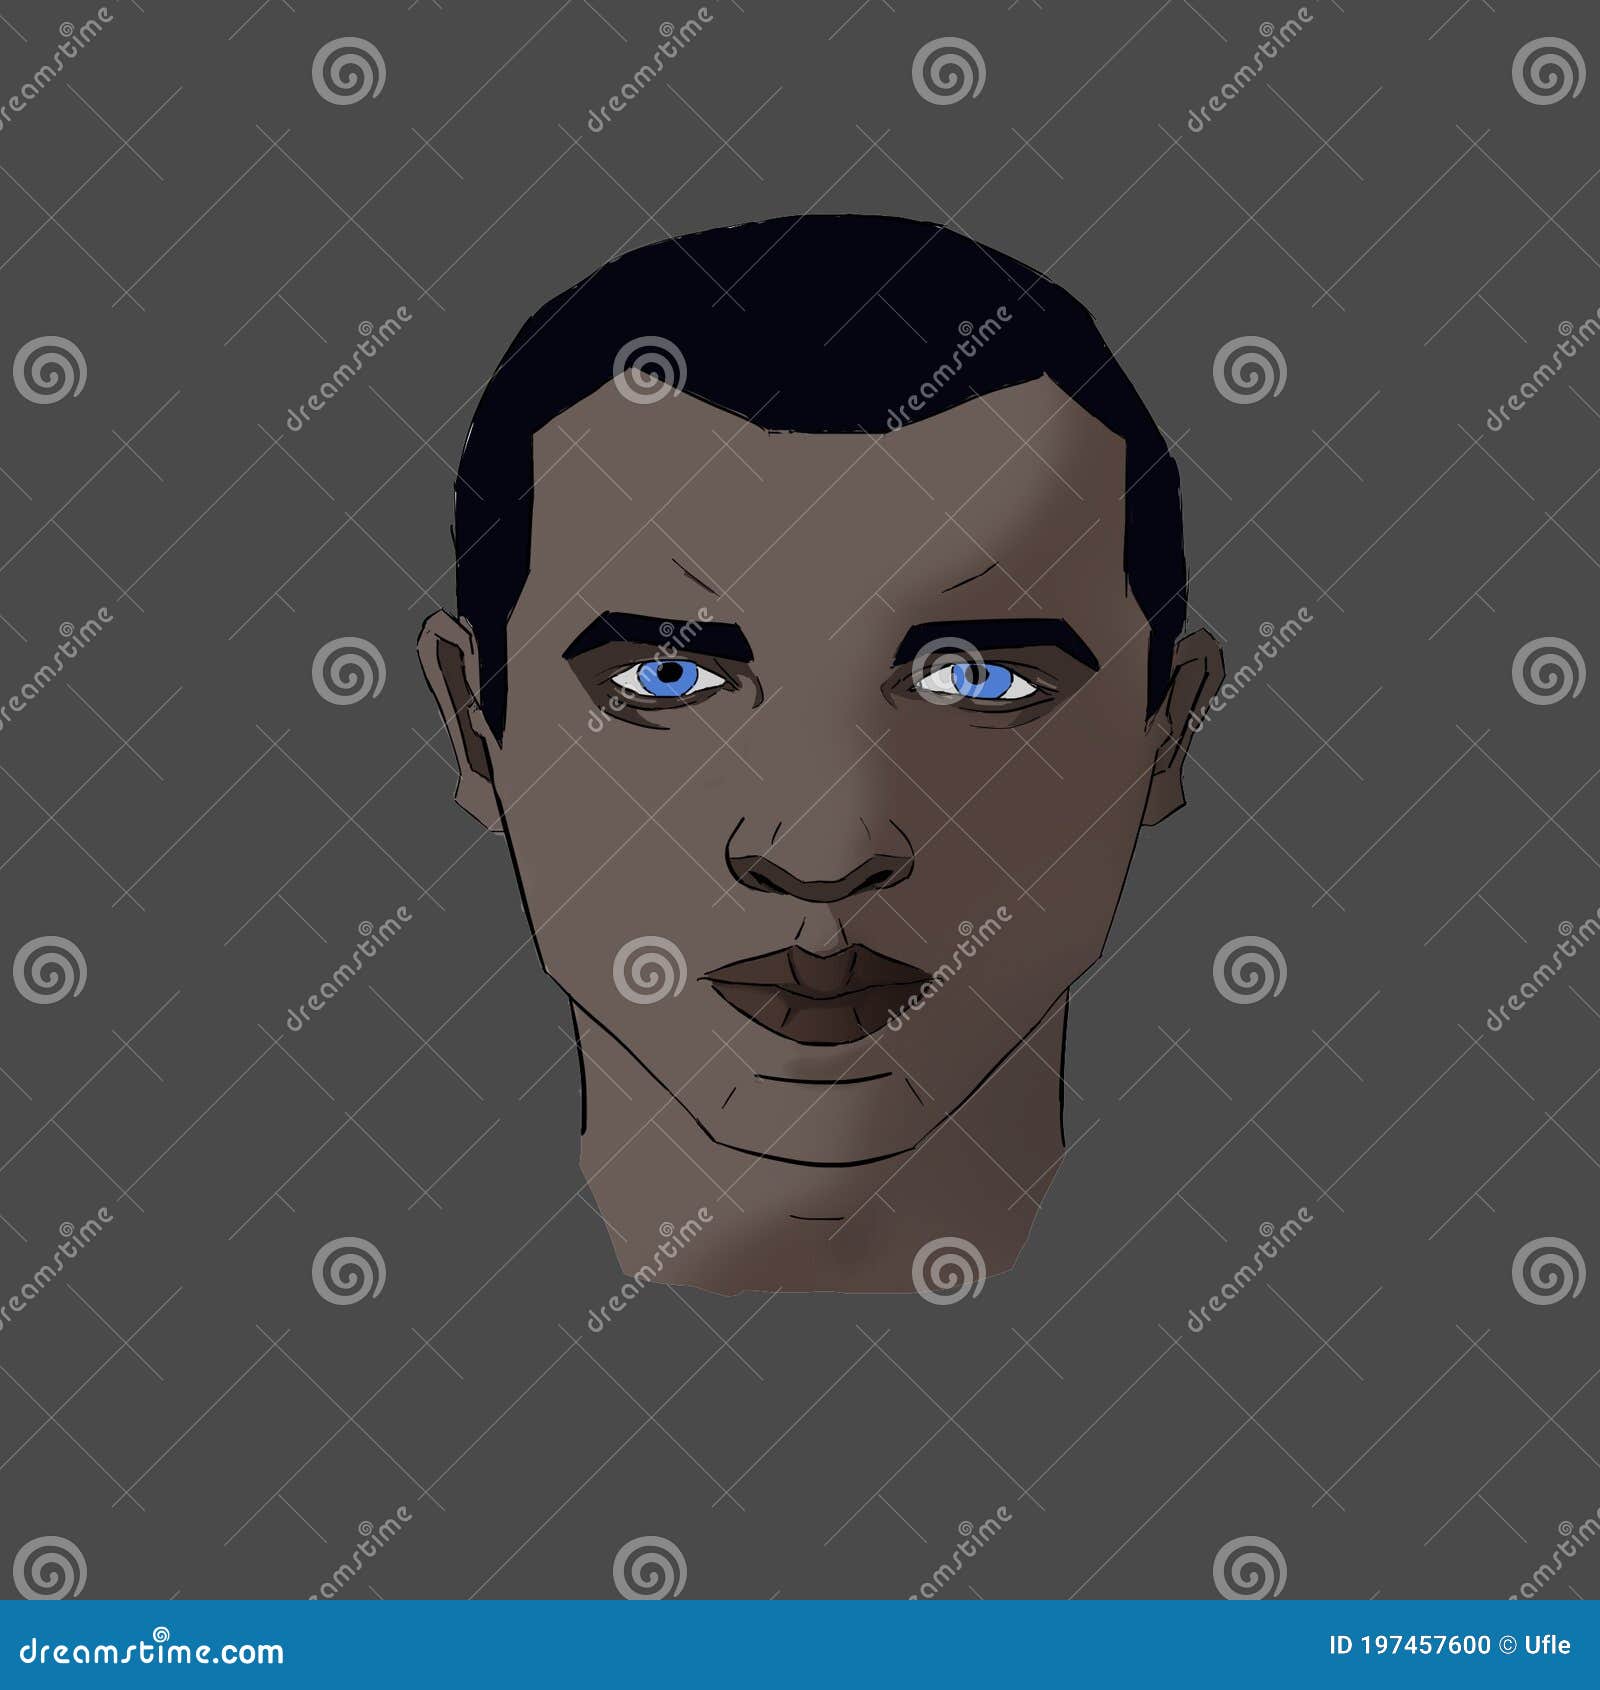 Augen schwarze haare mann blaue 